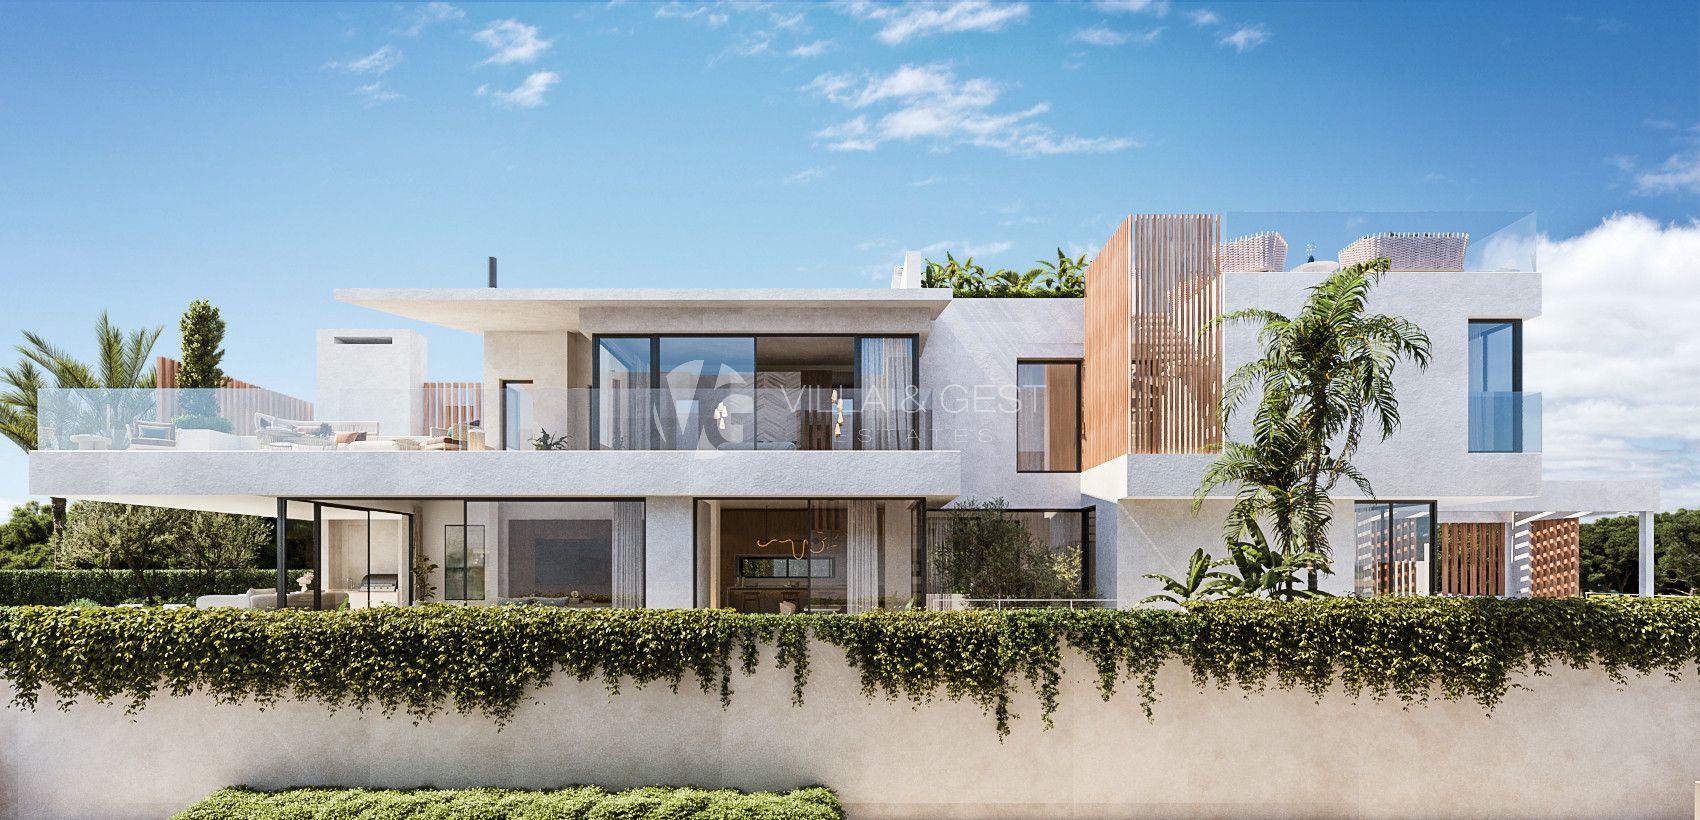 Villas Higueron, New Development in Fuengirola